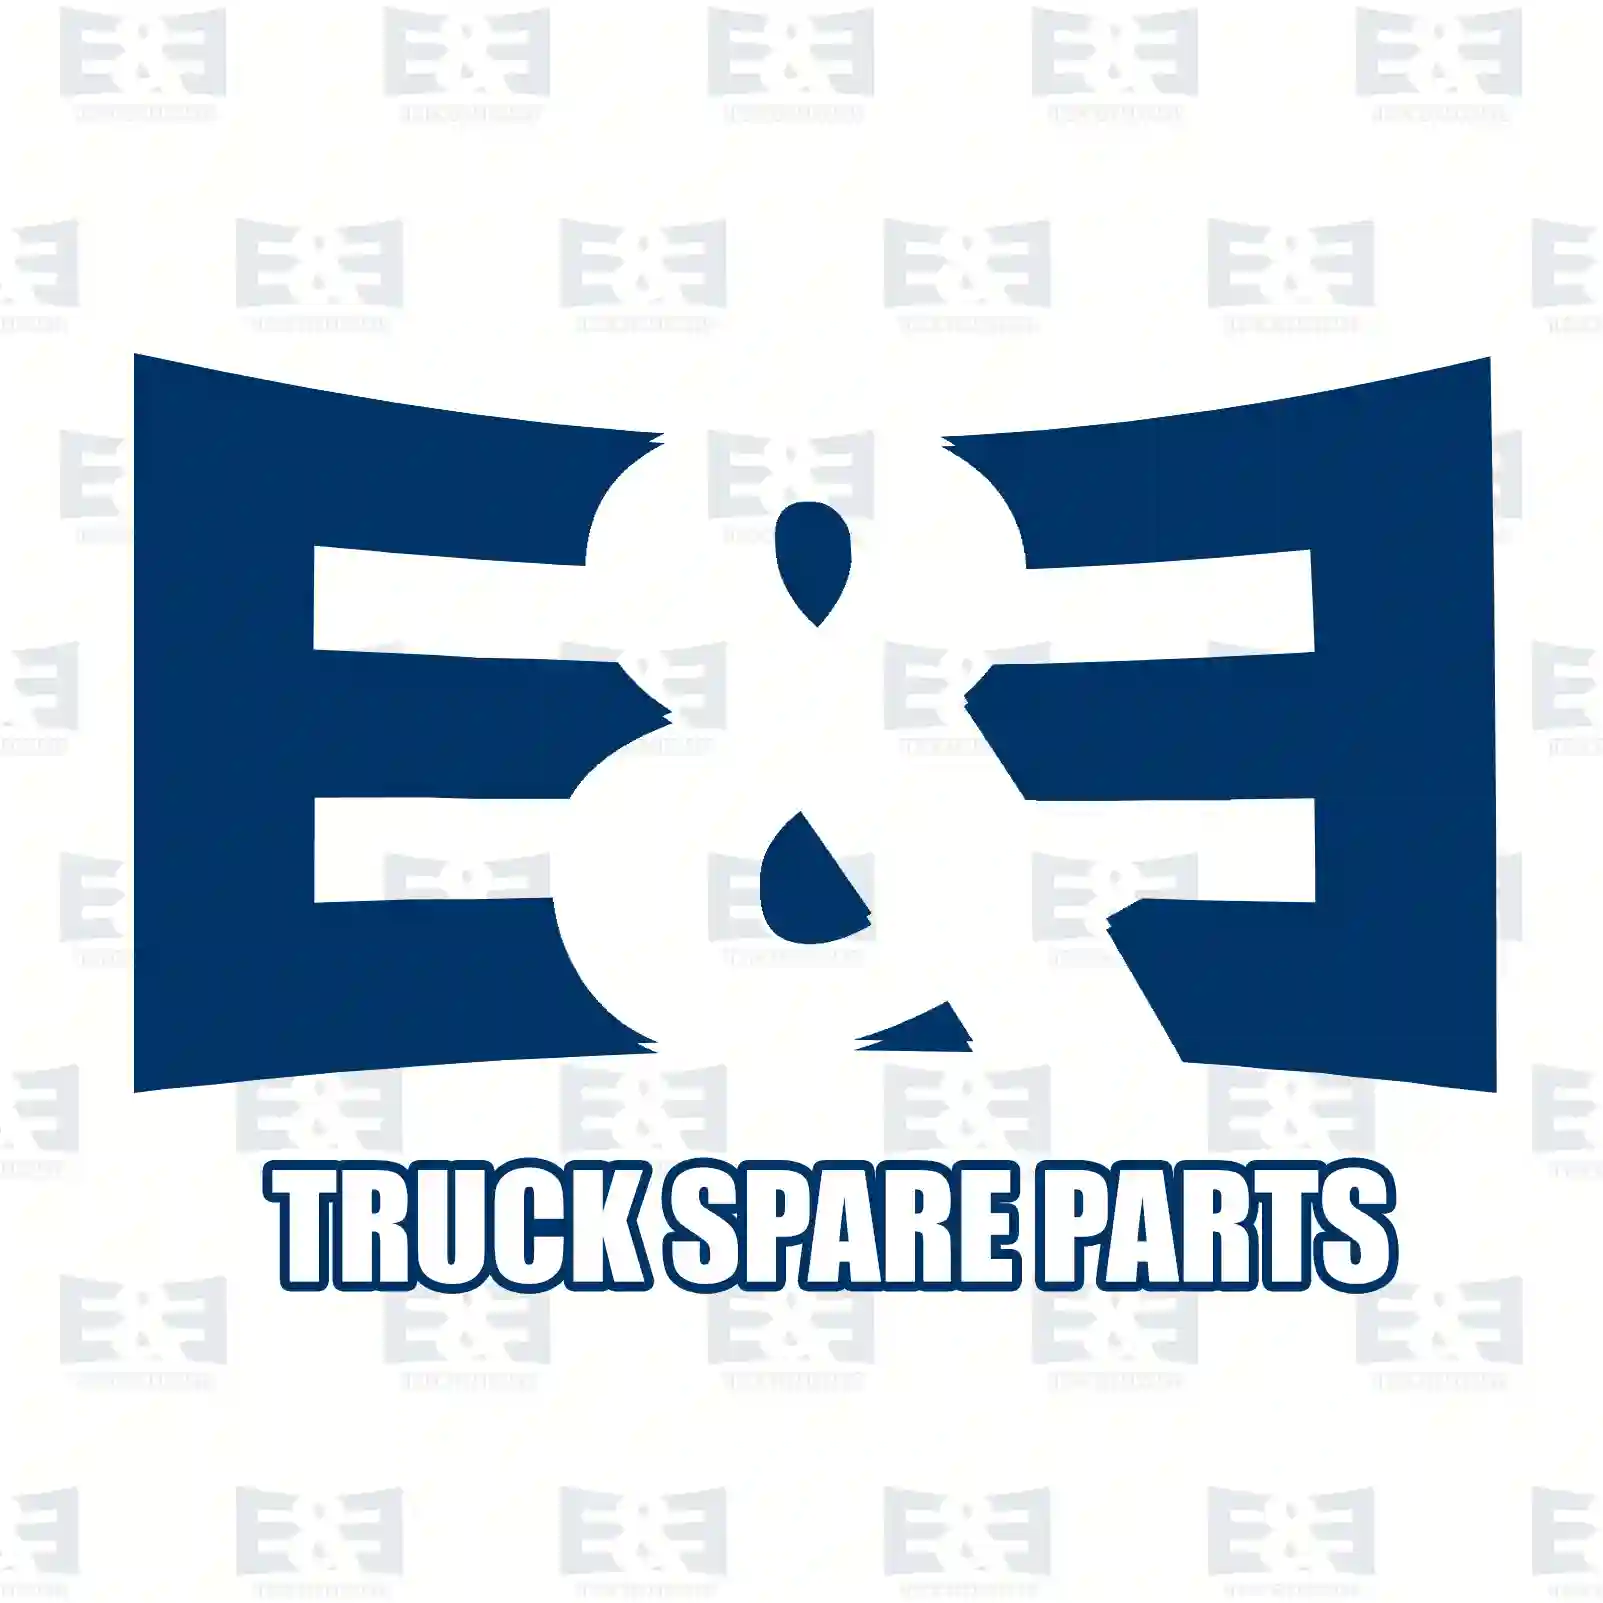 Synchronizer ring, 2E2279489, 7421992993, 21992 ||  2E2279489 E&E Truck Spare Parts | Truck Spare Parts, Auotomotive Spare Parts Synchronizer ring, 2E2279489, 7421992993, 21992 ||  2E2279489 E&E Truck Spare Parts | Truck Spare Parts, Auotomotive Spare Parts